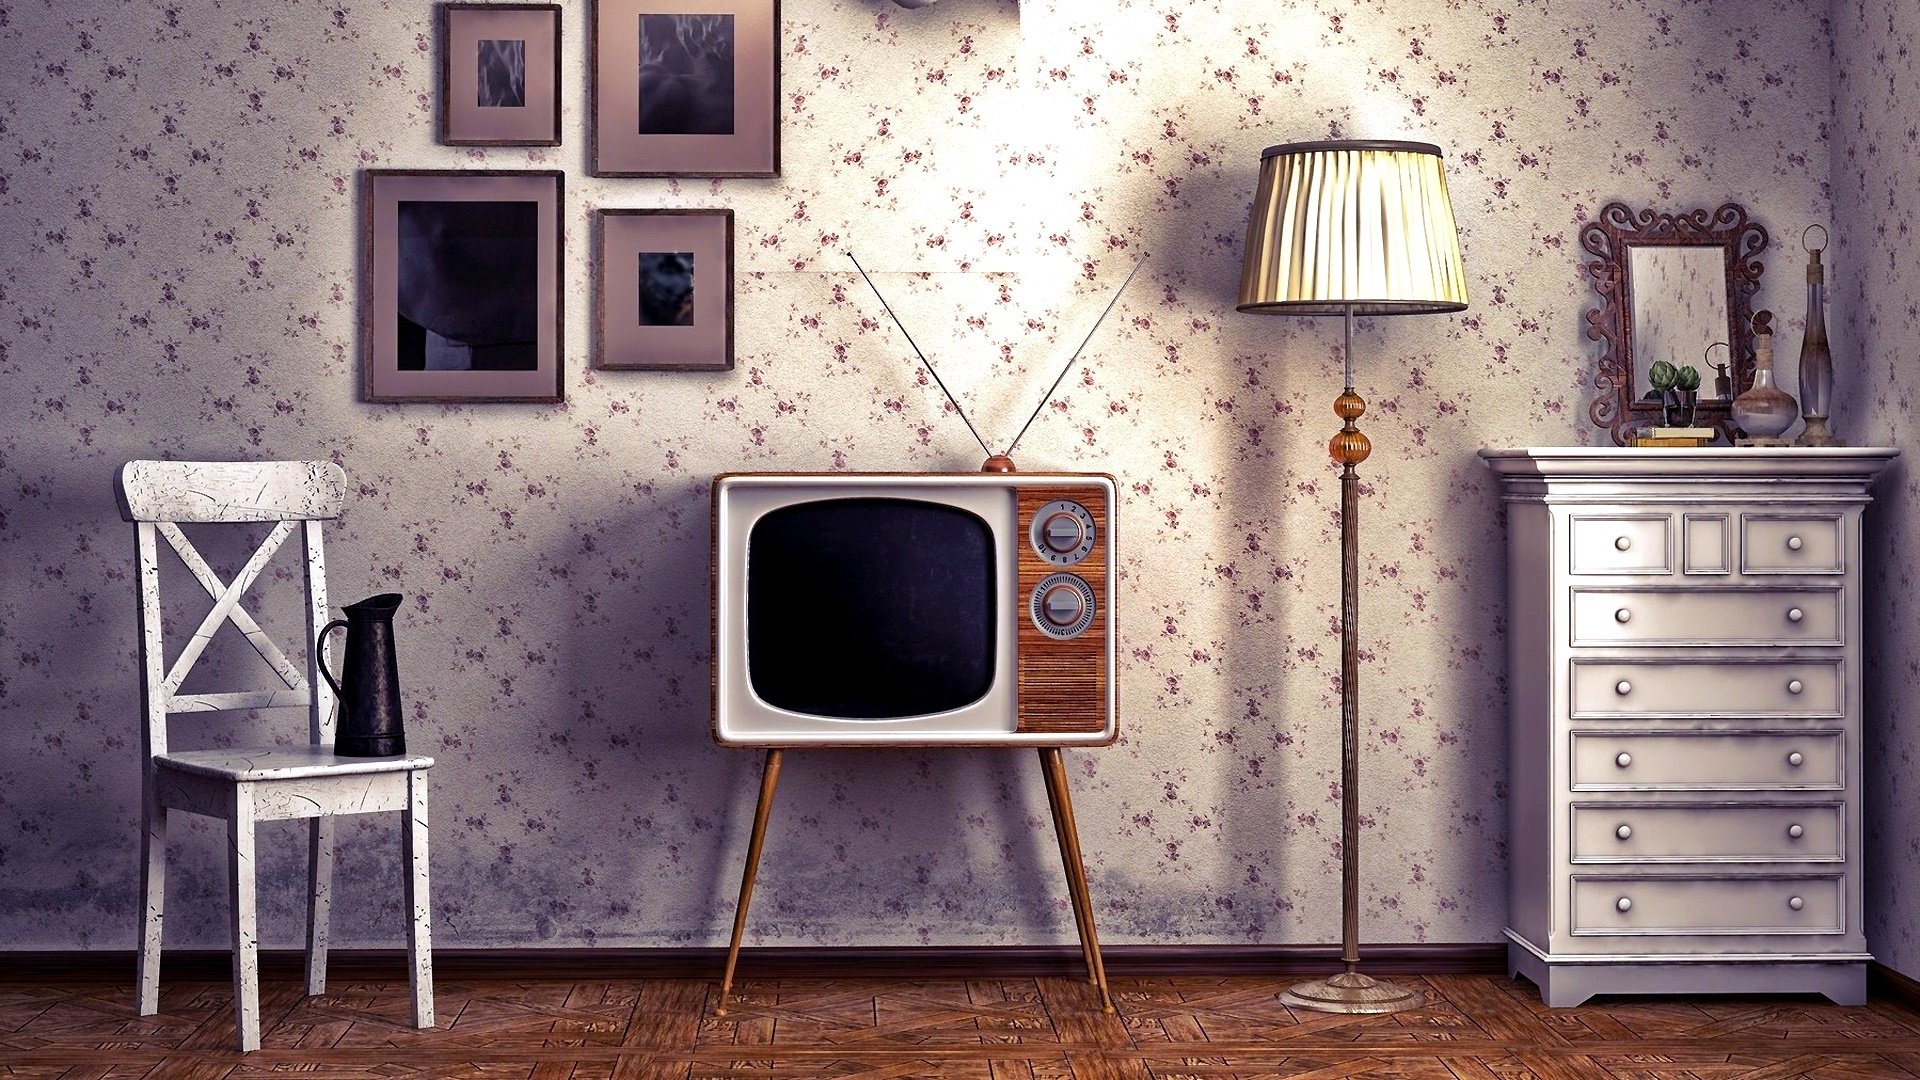 1950s living room wallpaper